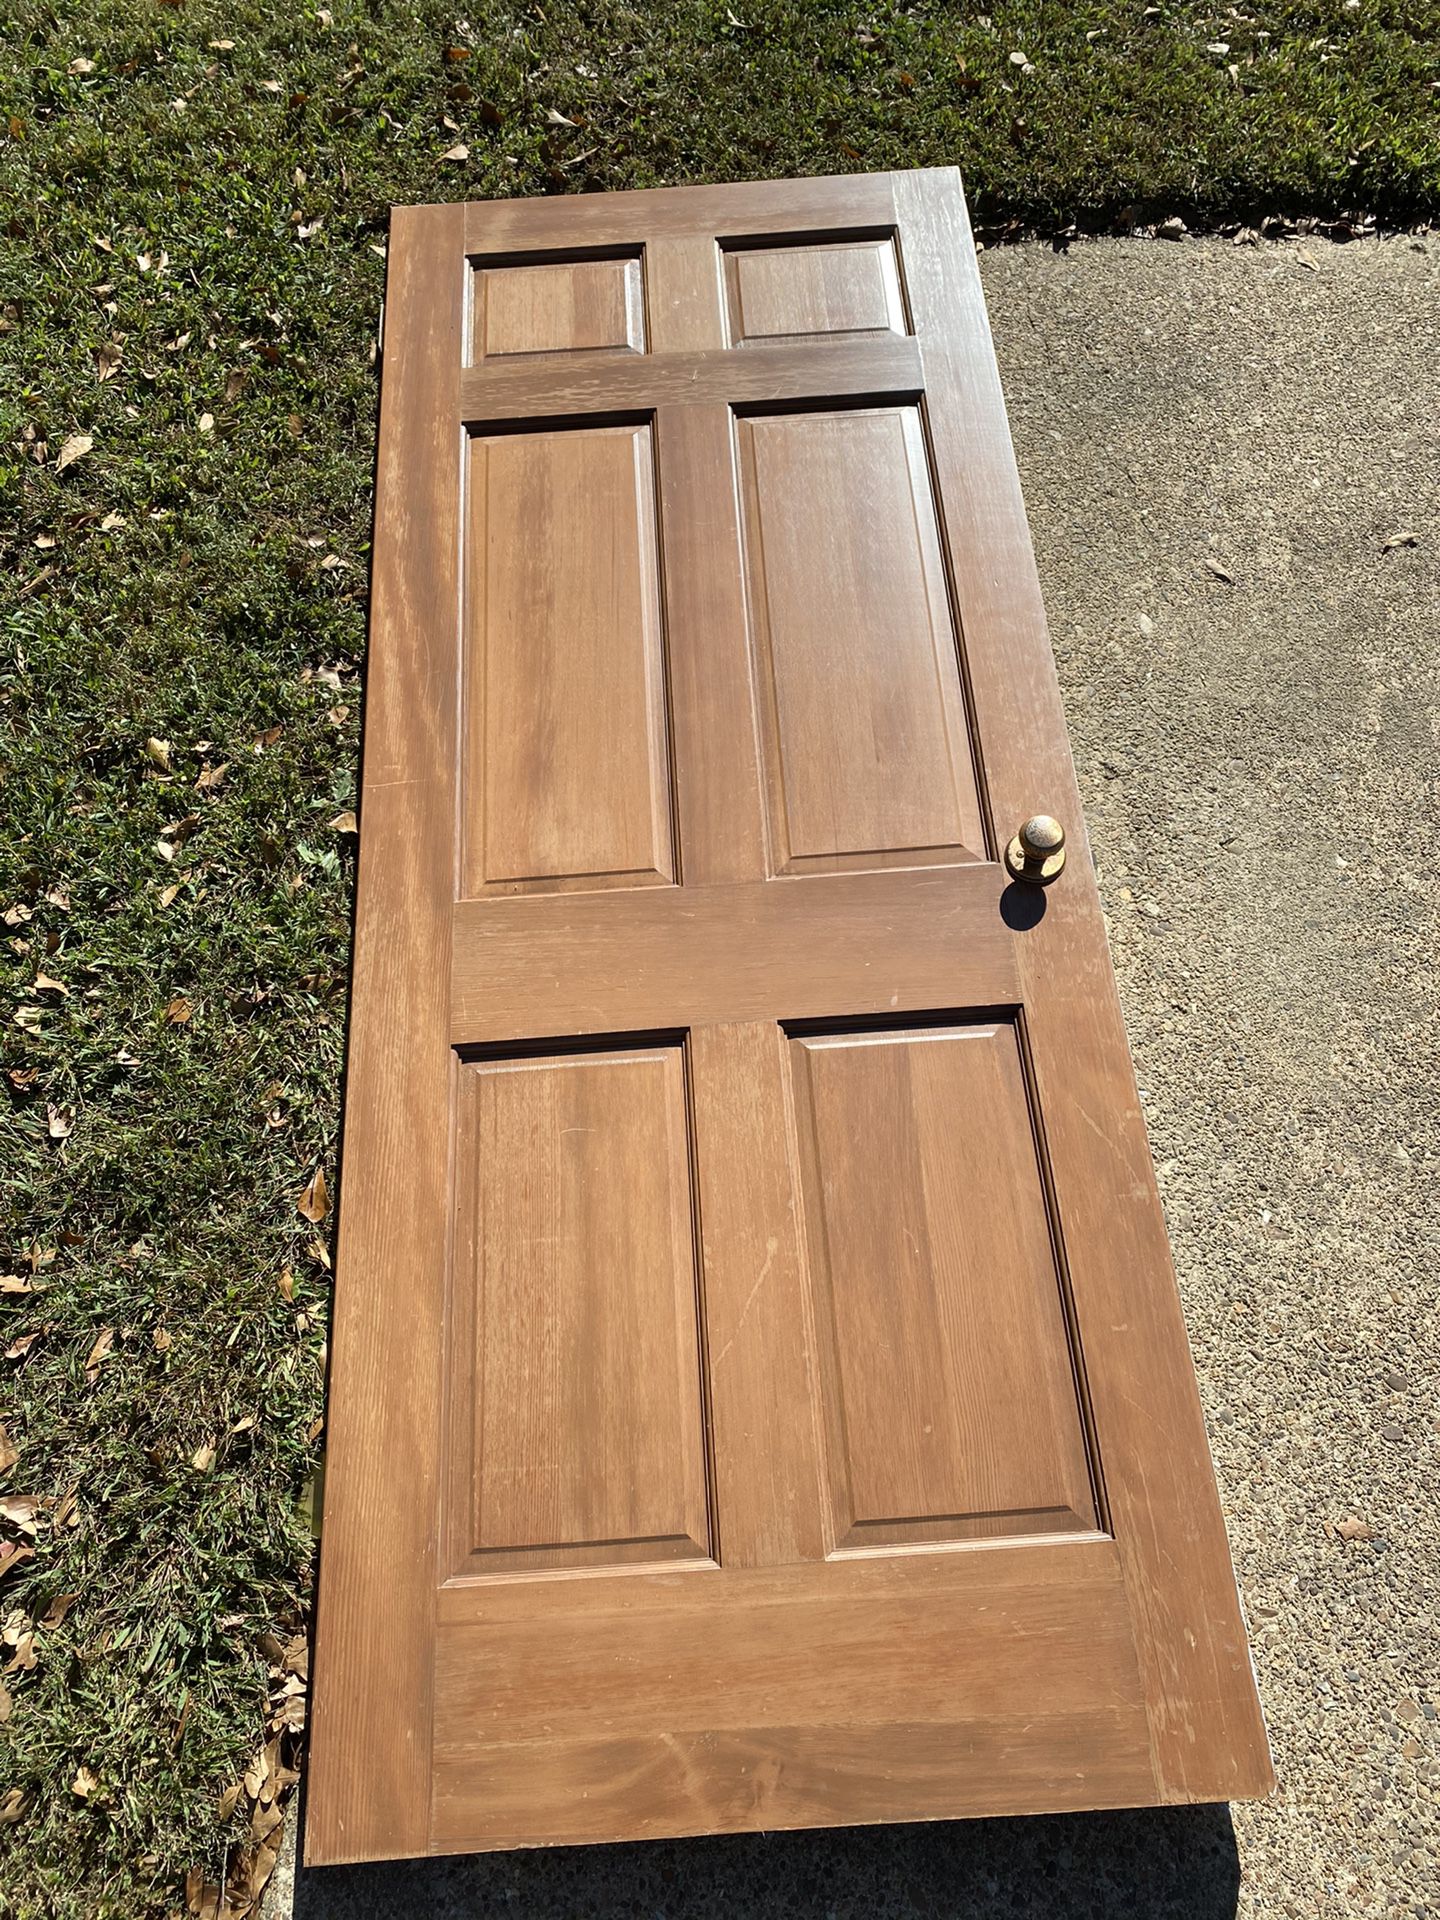 Solid wood door from 1960s 6 panel house inside door